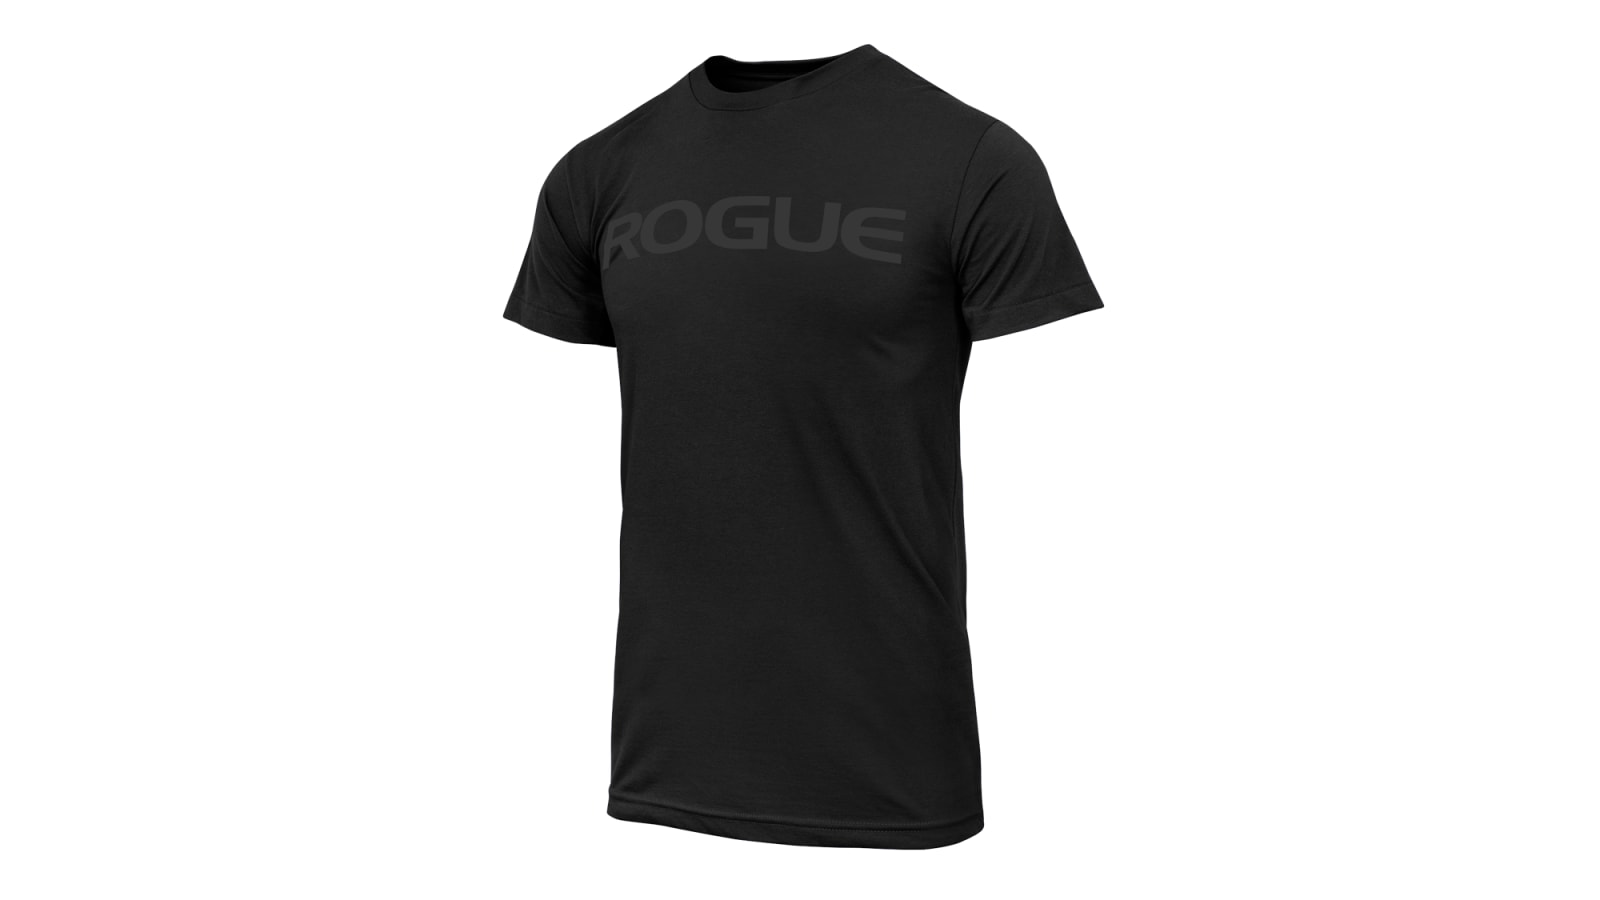 Handelsmerk Reclame in plaats daarvan Rich Froning Shirt - CrossFit Games - Black | Rogue Fitness